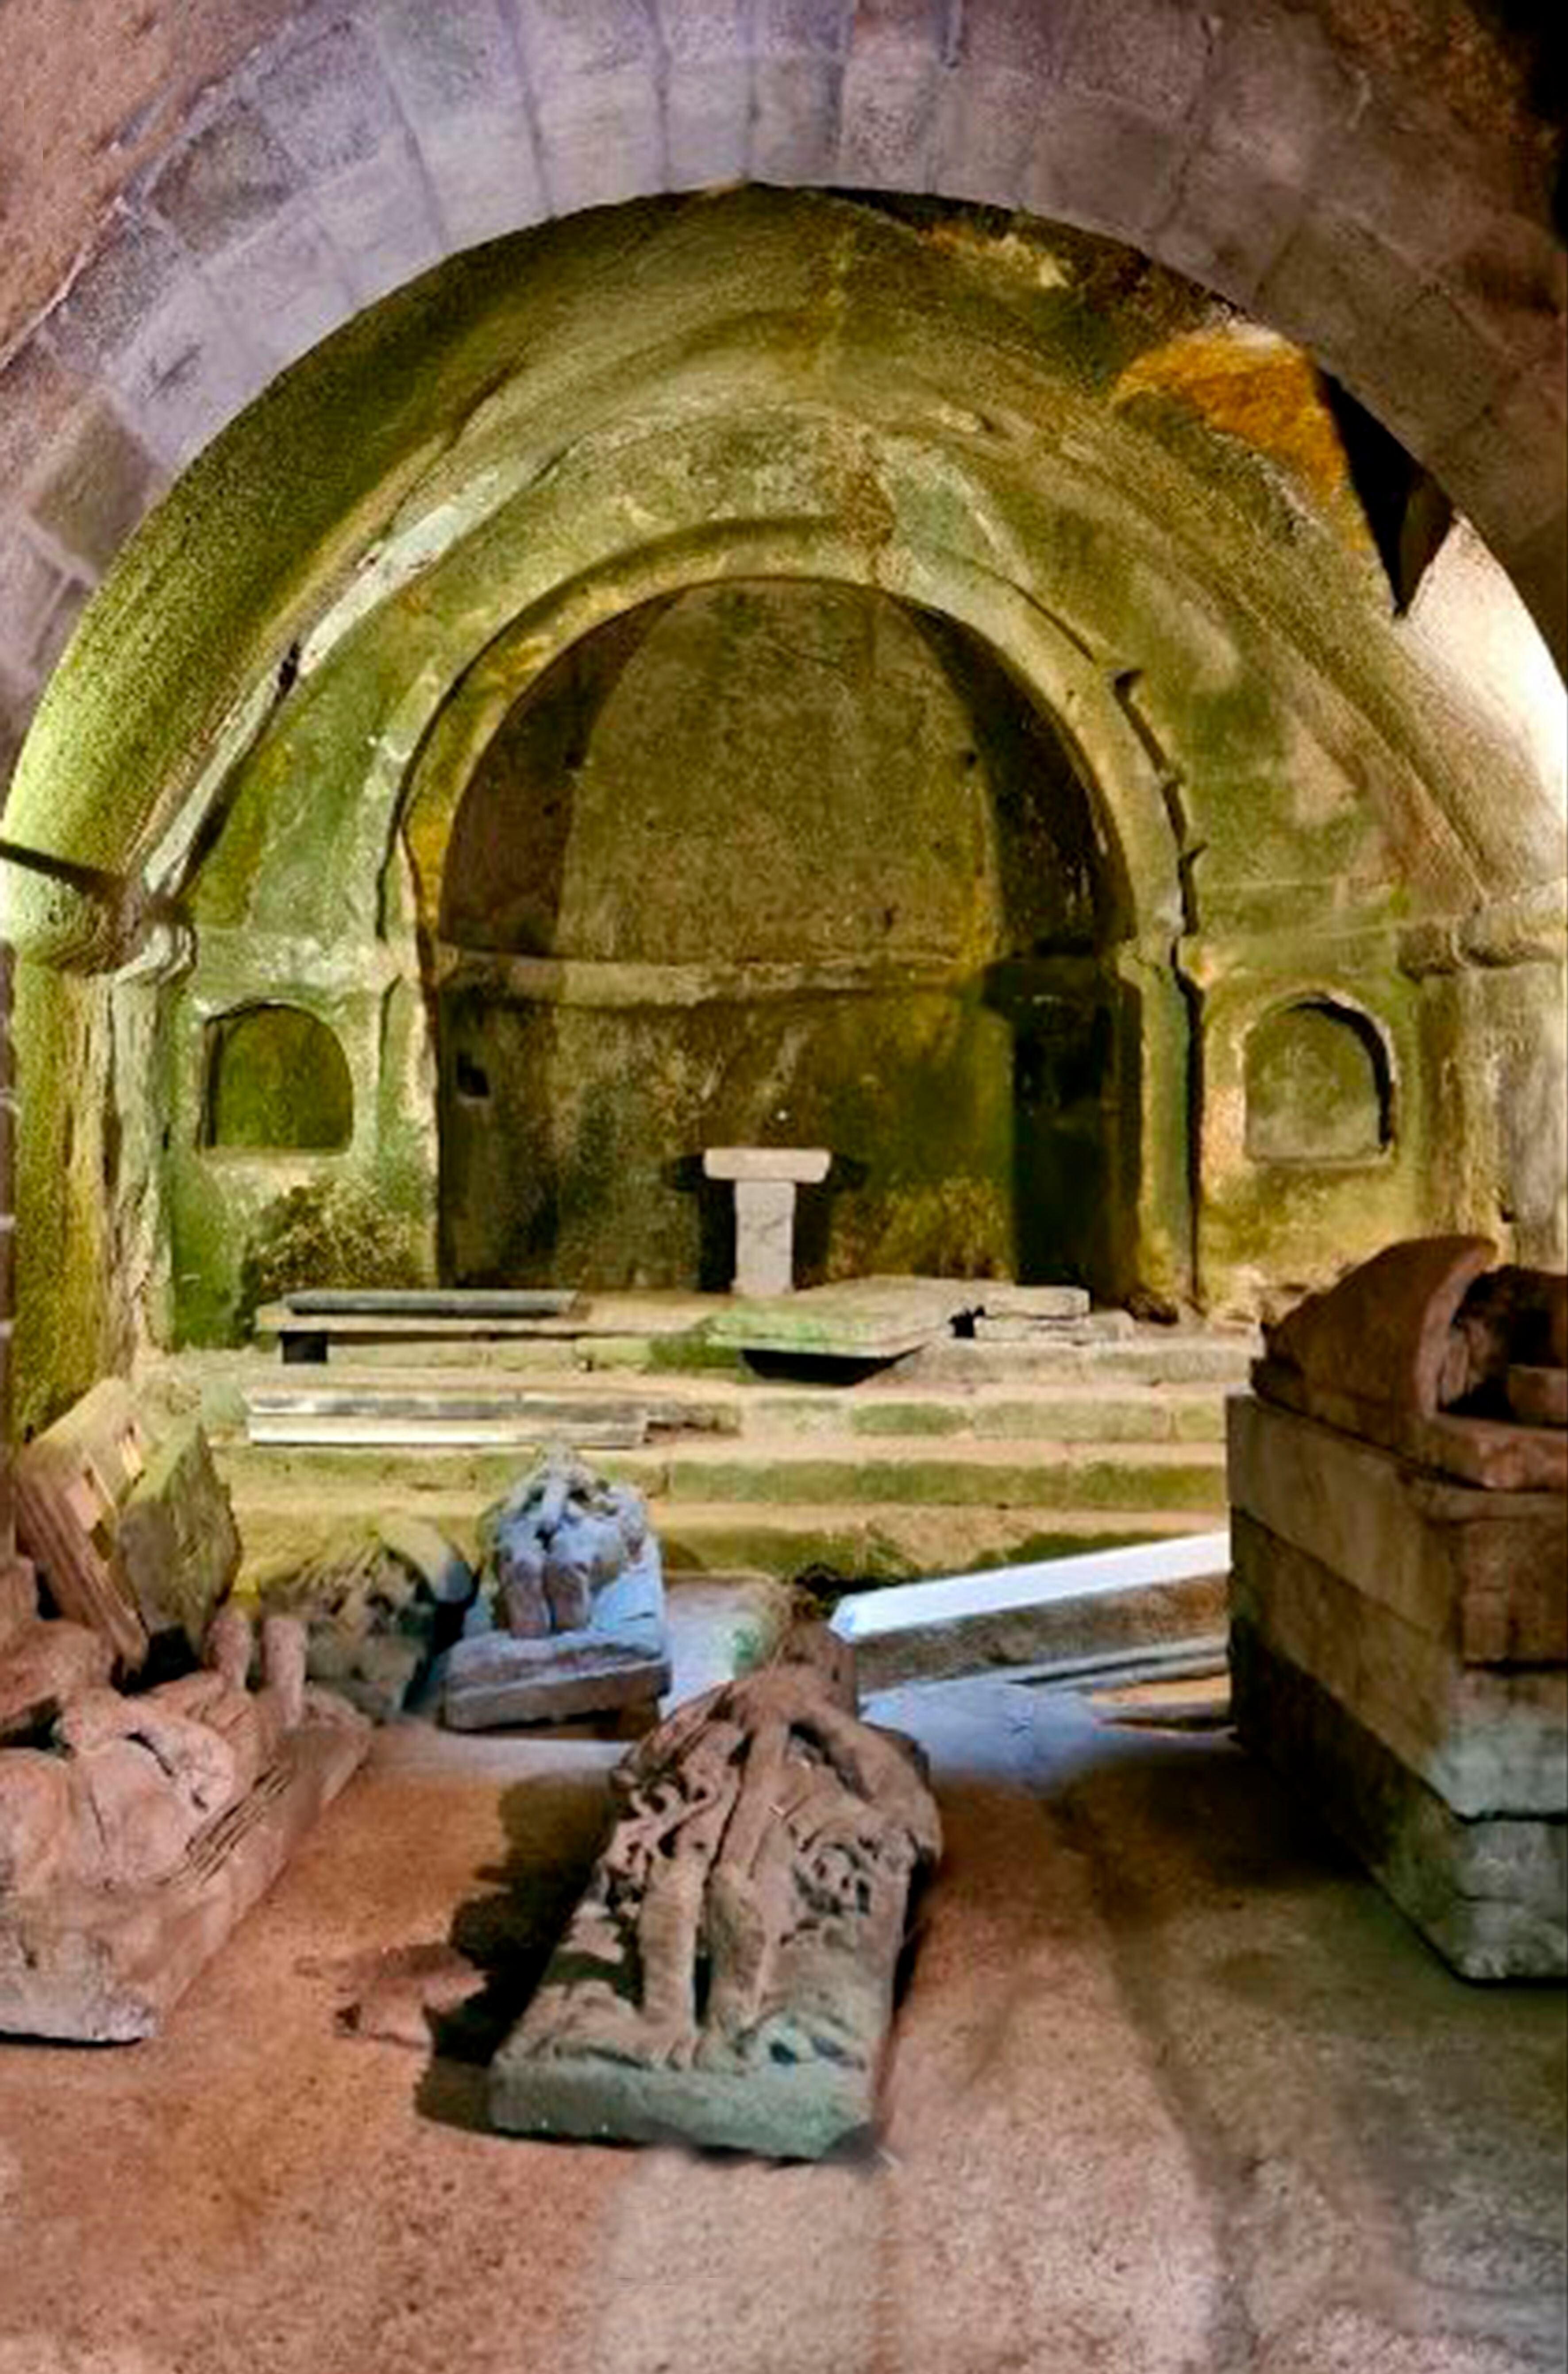 Imagen de Google Maps de una capilla del monasterio con el atrezo durante el rodaje de la película 'Live is Life'.